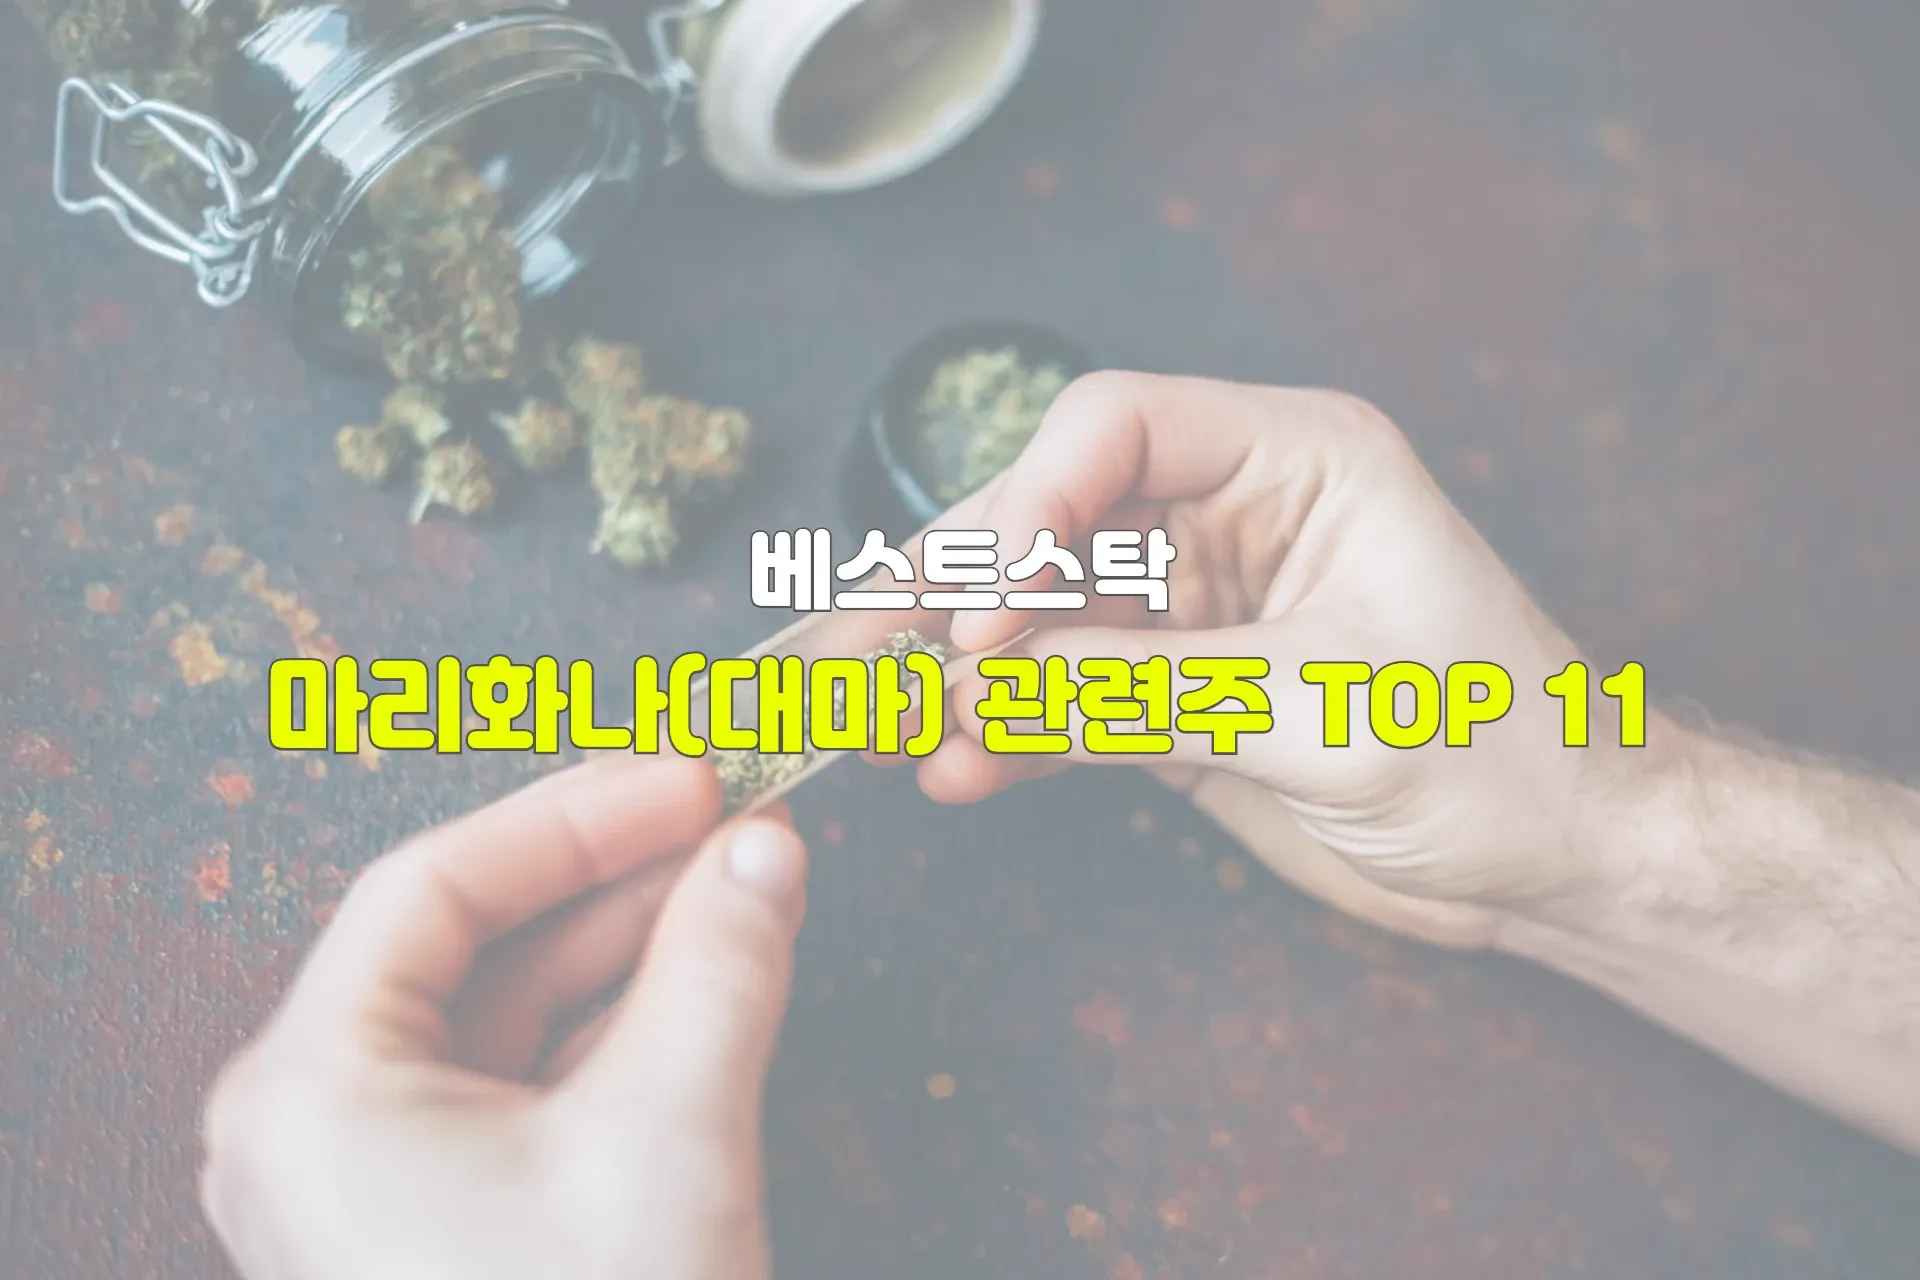 마리화나(대마) 관련주 TOP 11 썸네일